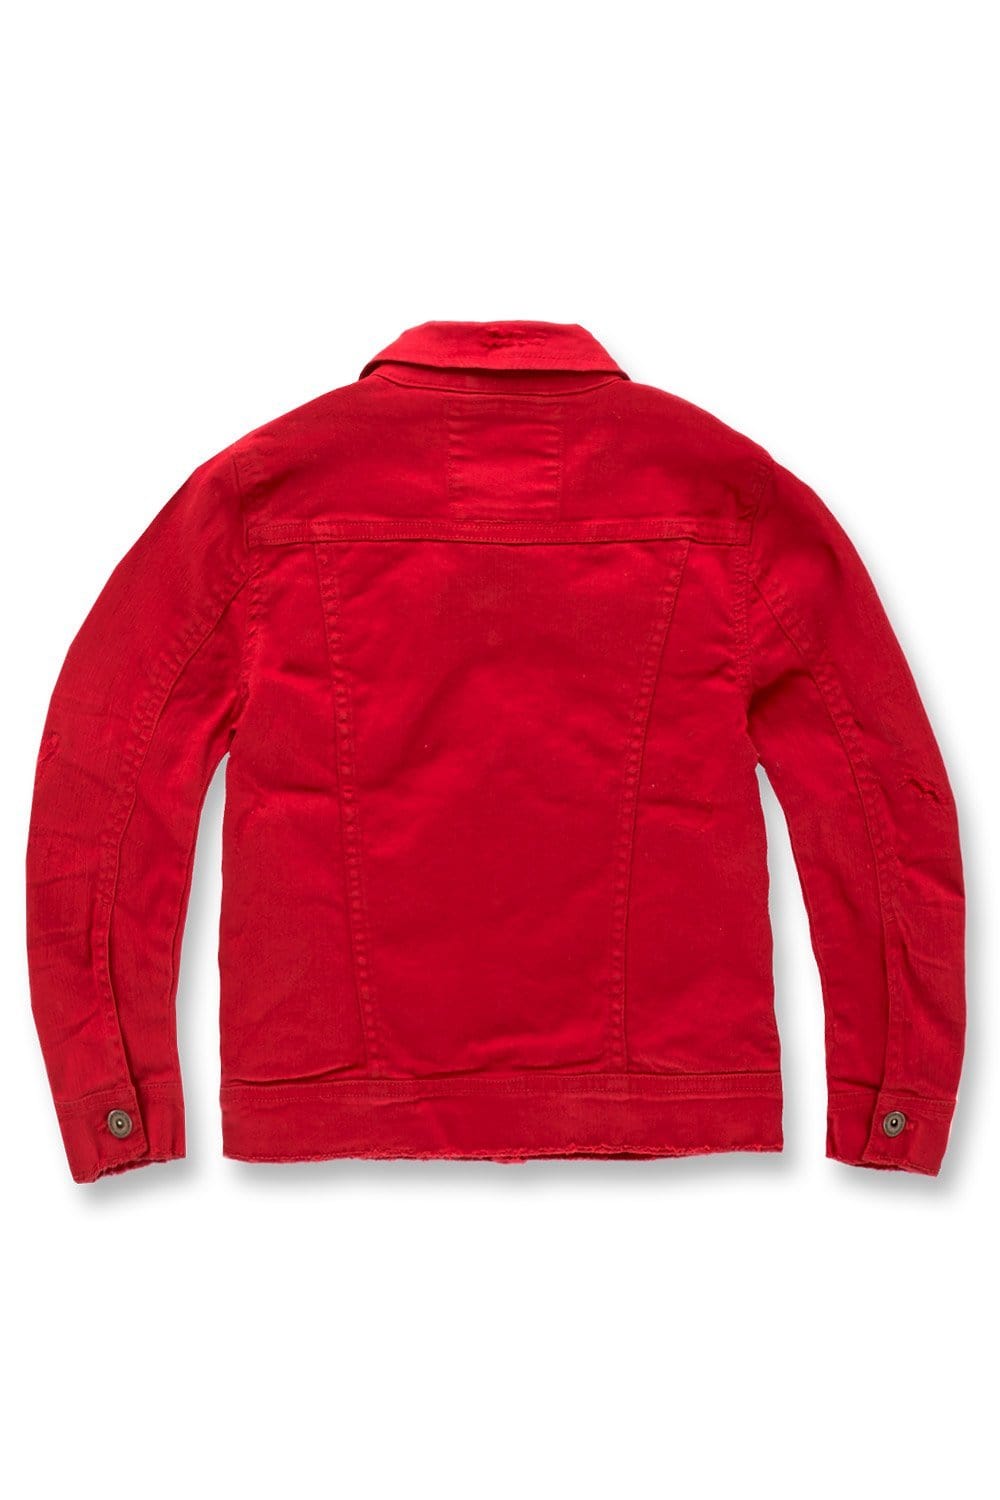 JC Kids Kids Tribeca Twill Trucker Jacket (Red)